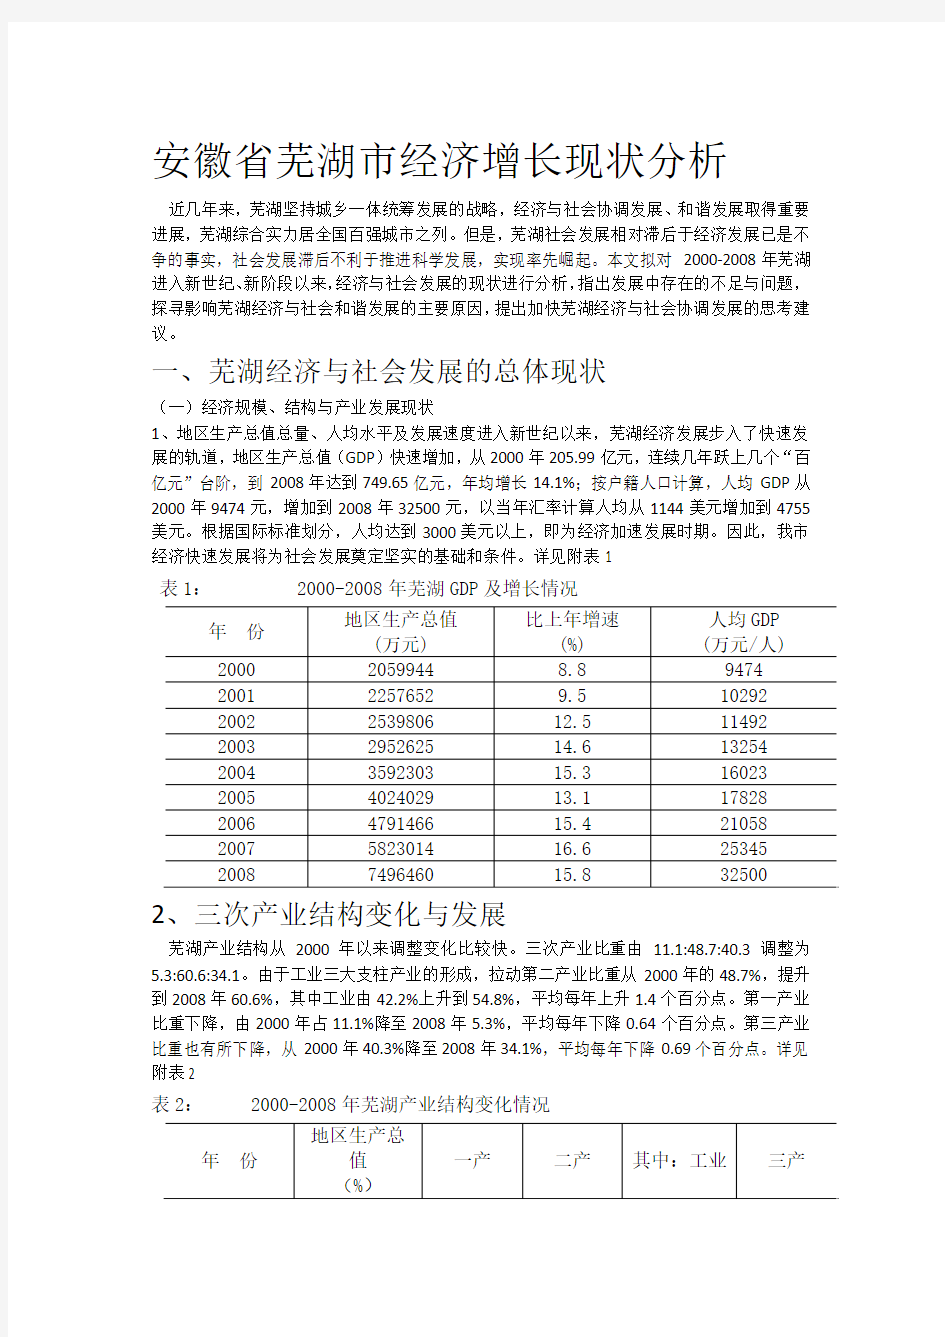 安徽省芜湖市经济增长现状分析